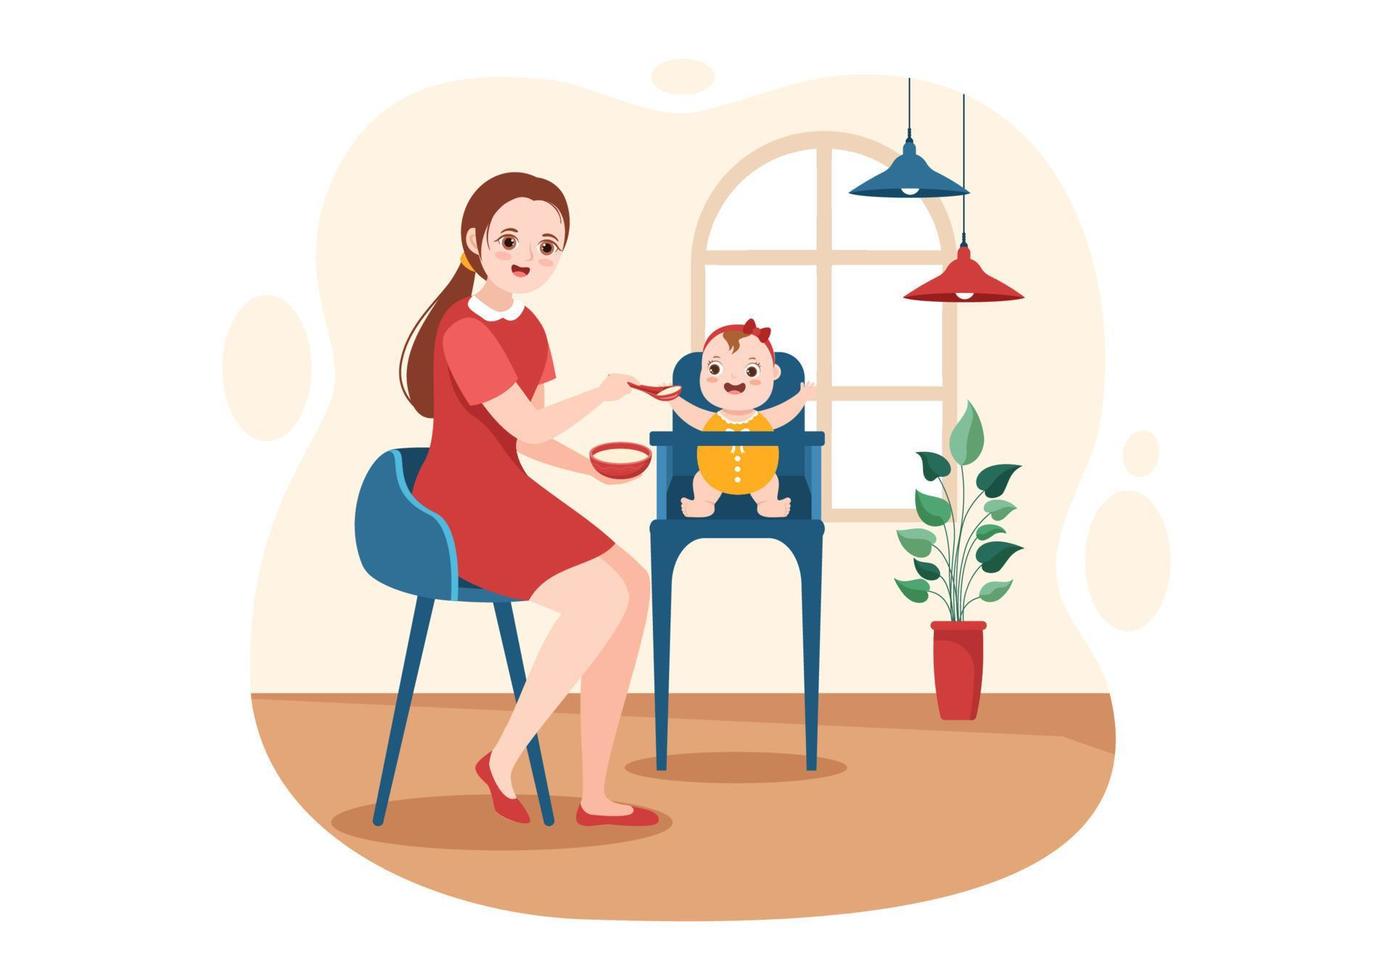 servicios de niñera o niñera para atender las necesidades del bebé y jugar con niños en dibujos animados planos dibujados a mano ilustración de plantilla vector